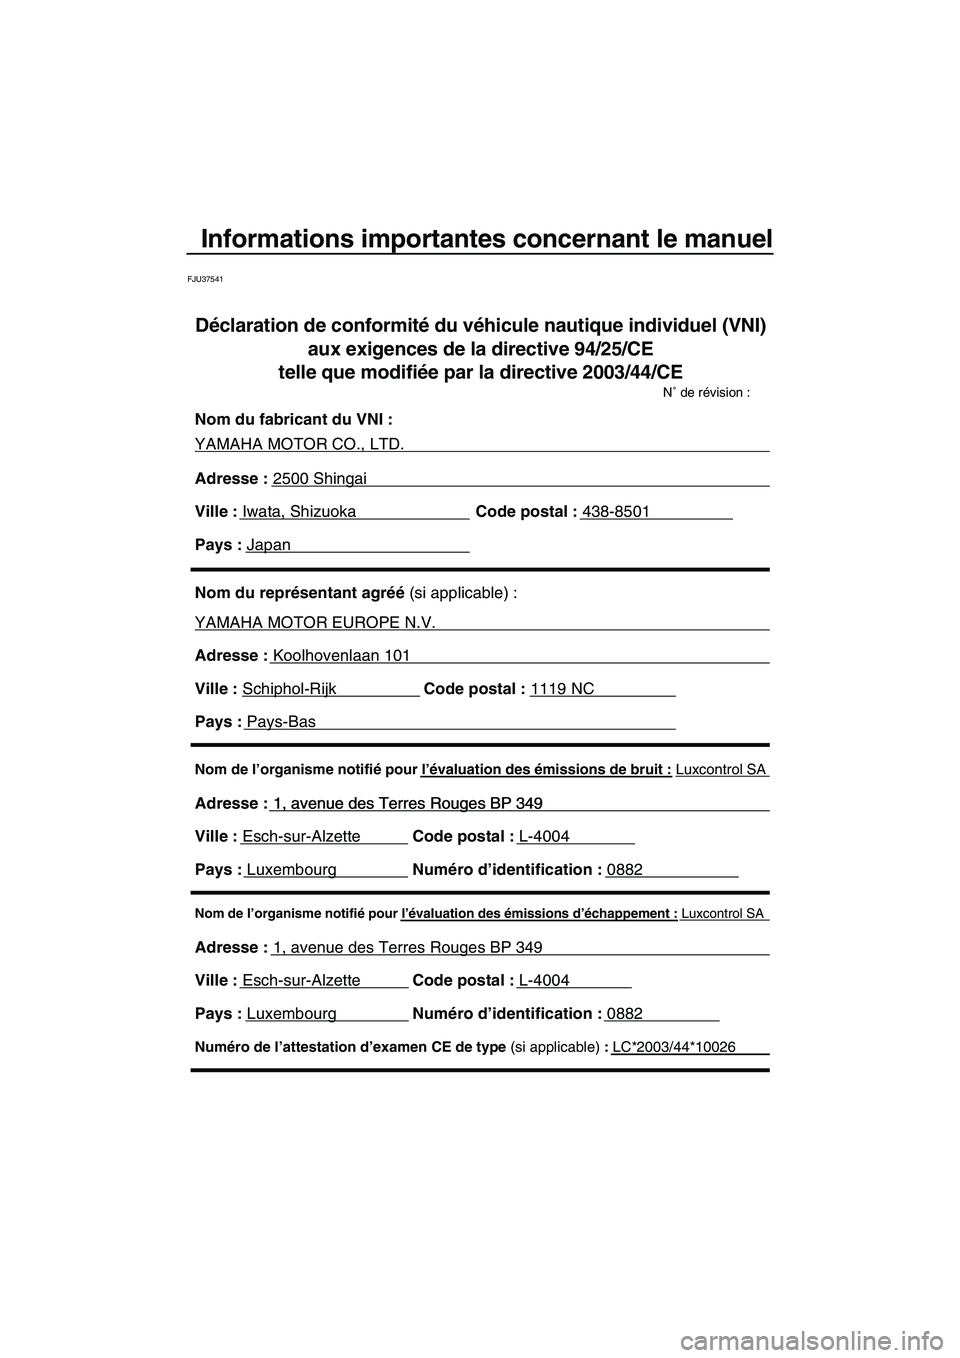 YAMAHA FZS 2010  Notices Demploi (in French) Informations importantes concernant le manuel
FJU37541
Nom de l’organisme notifié pour l’évaluation des émissions d’échappement : Luxcontrol SA
Adresse : 1, avenue des Terres Rouges BP 349 
